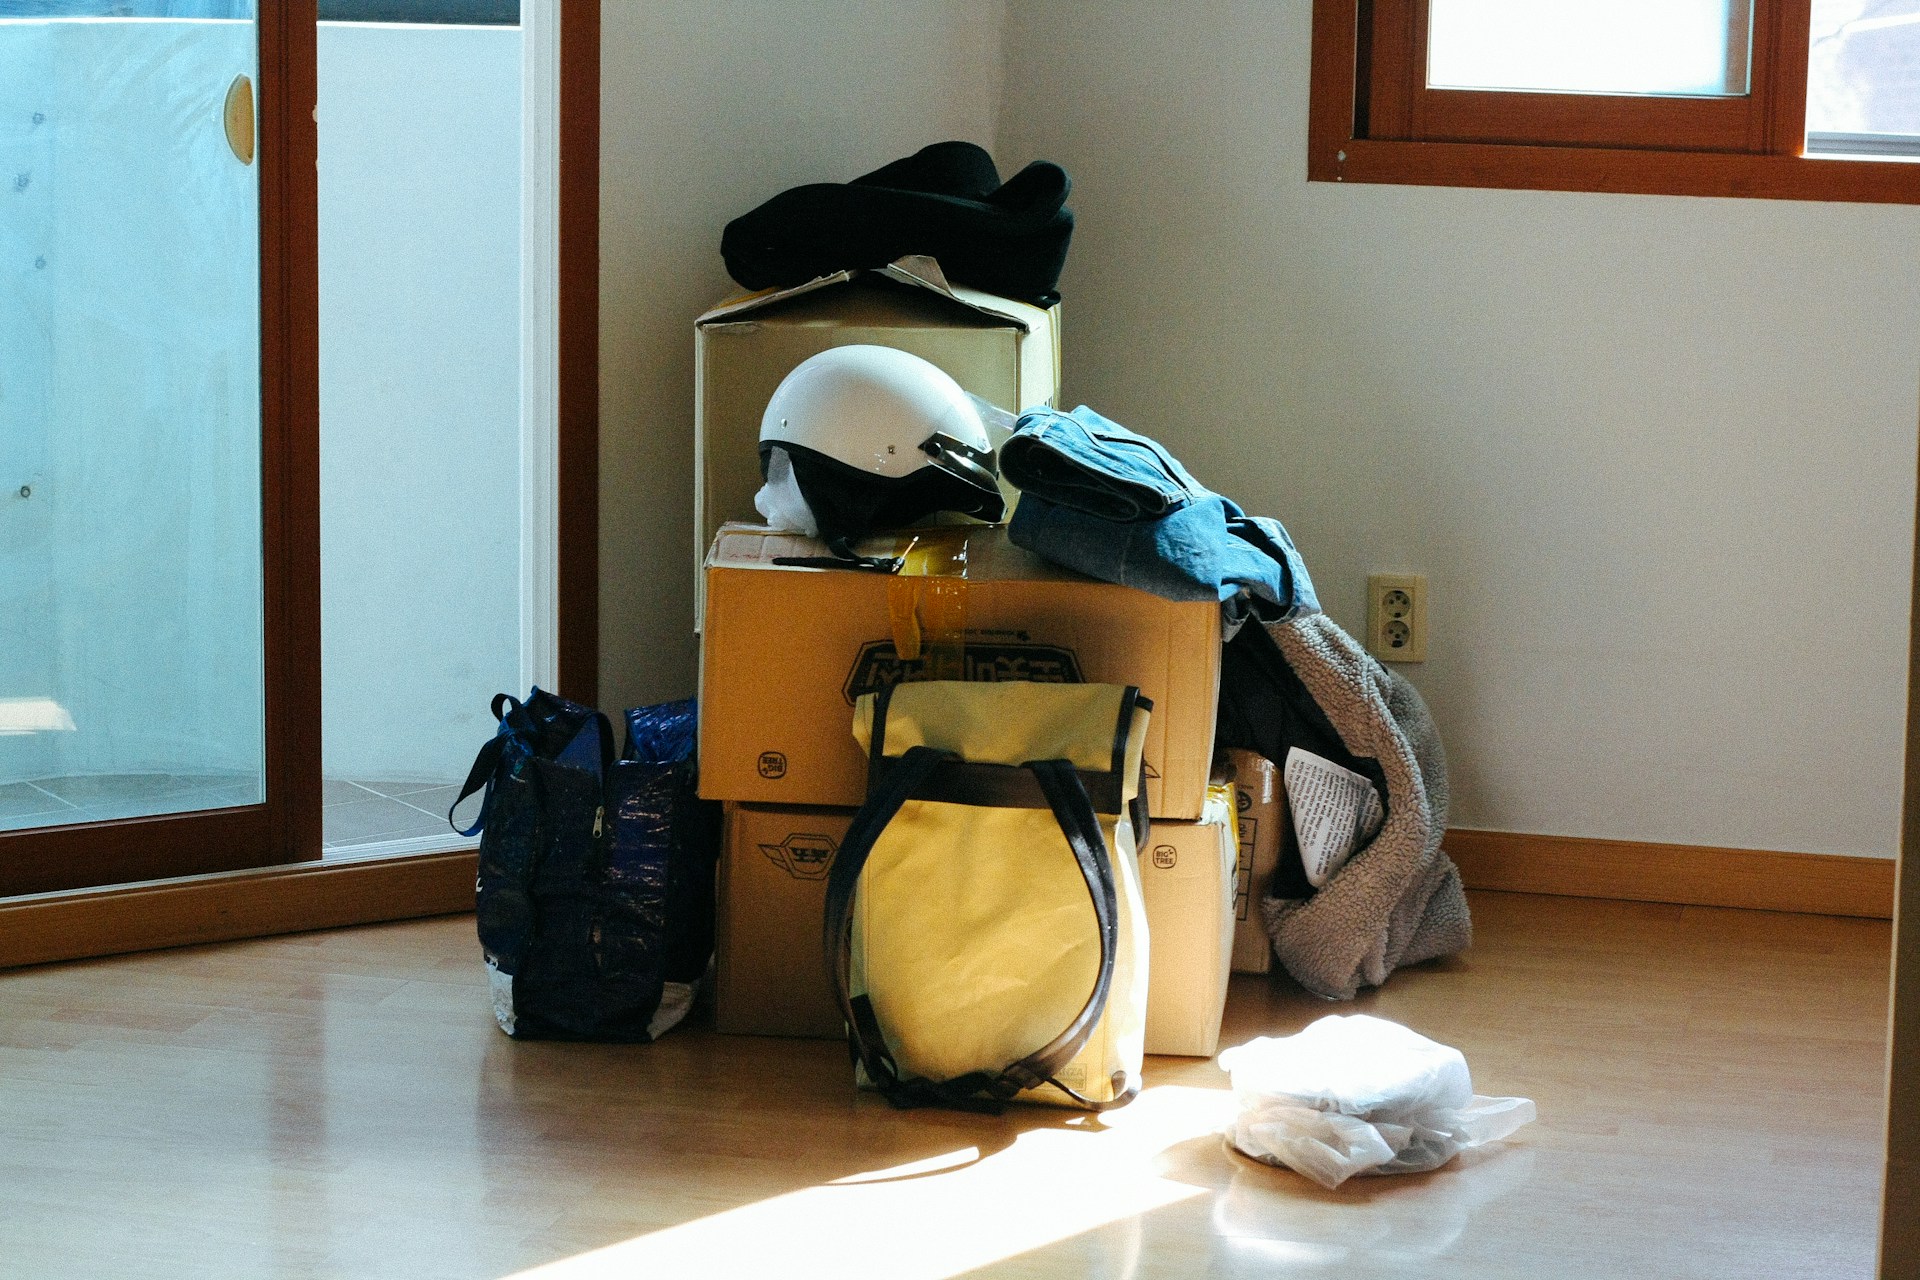 Boxes, bags, helmet on floor